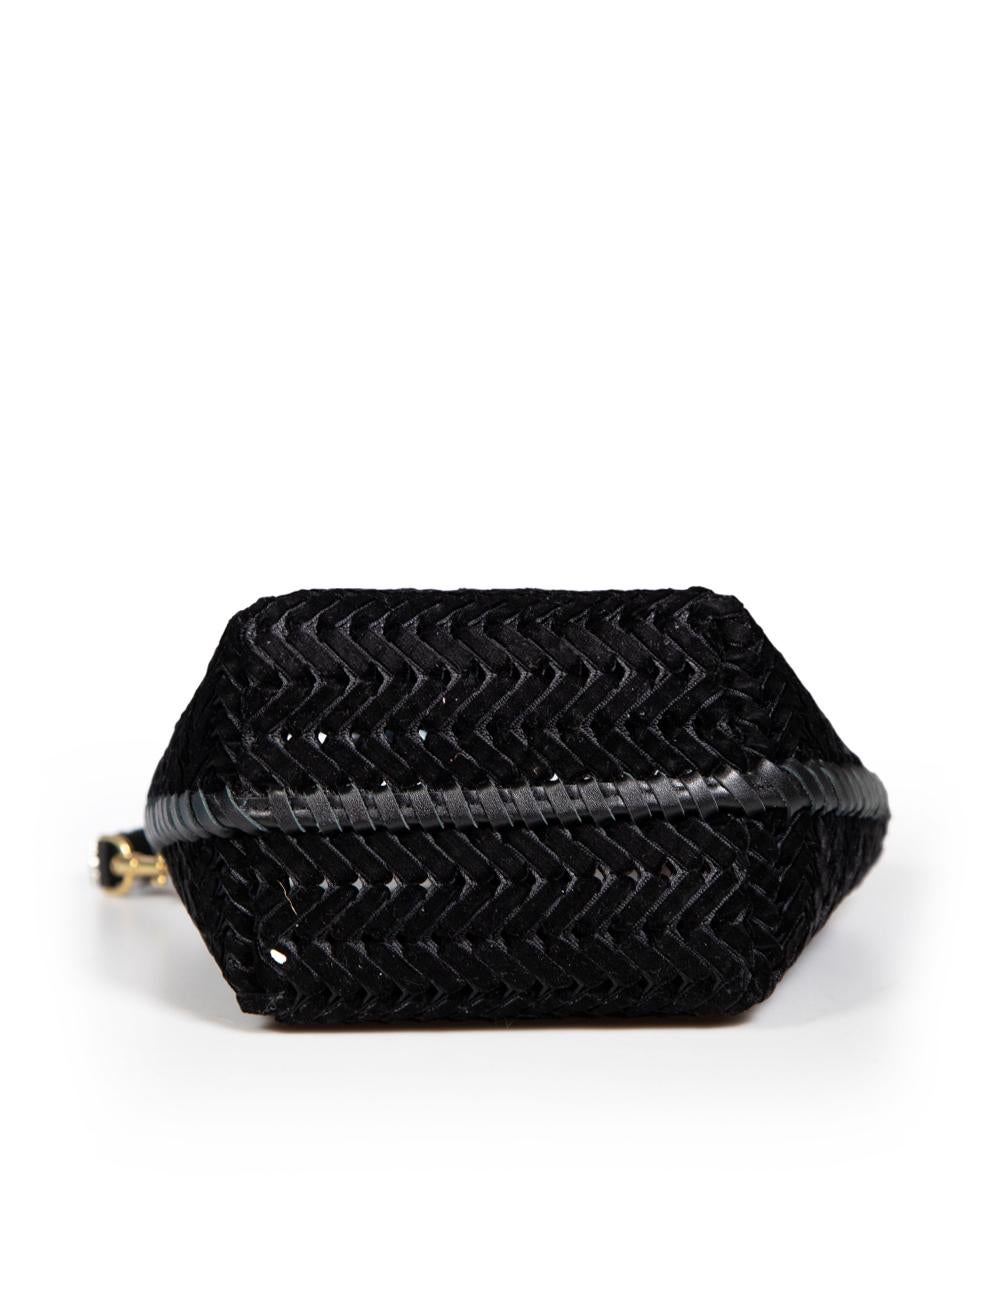 Women's Anya Hindmarch Black Velvet Gemstone Strap Woven Bag For Sale